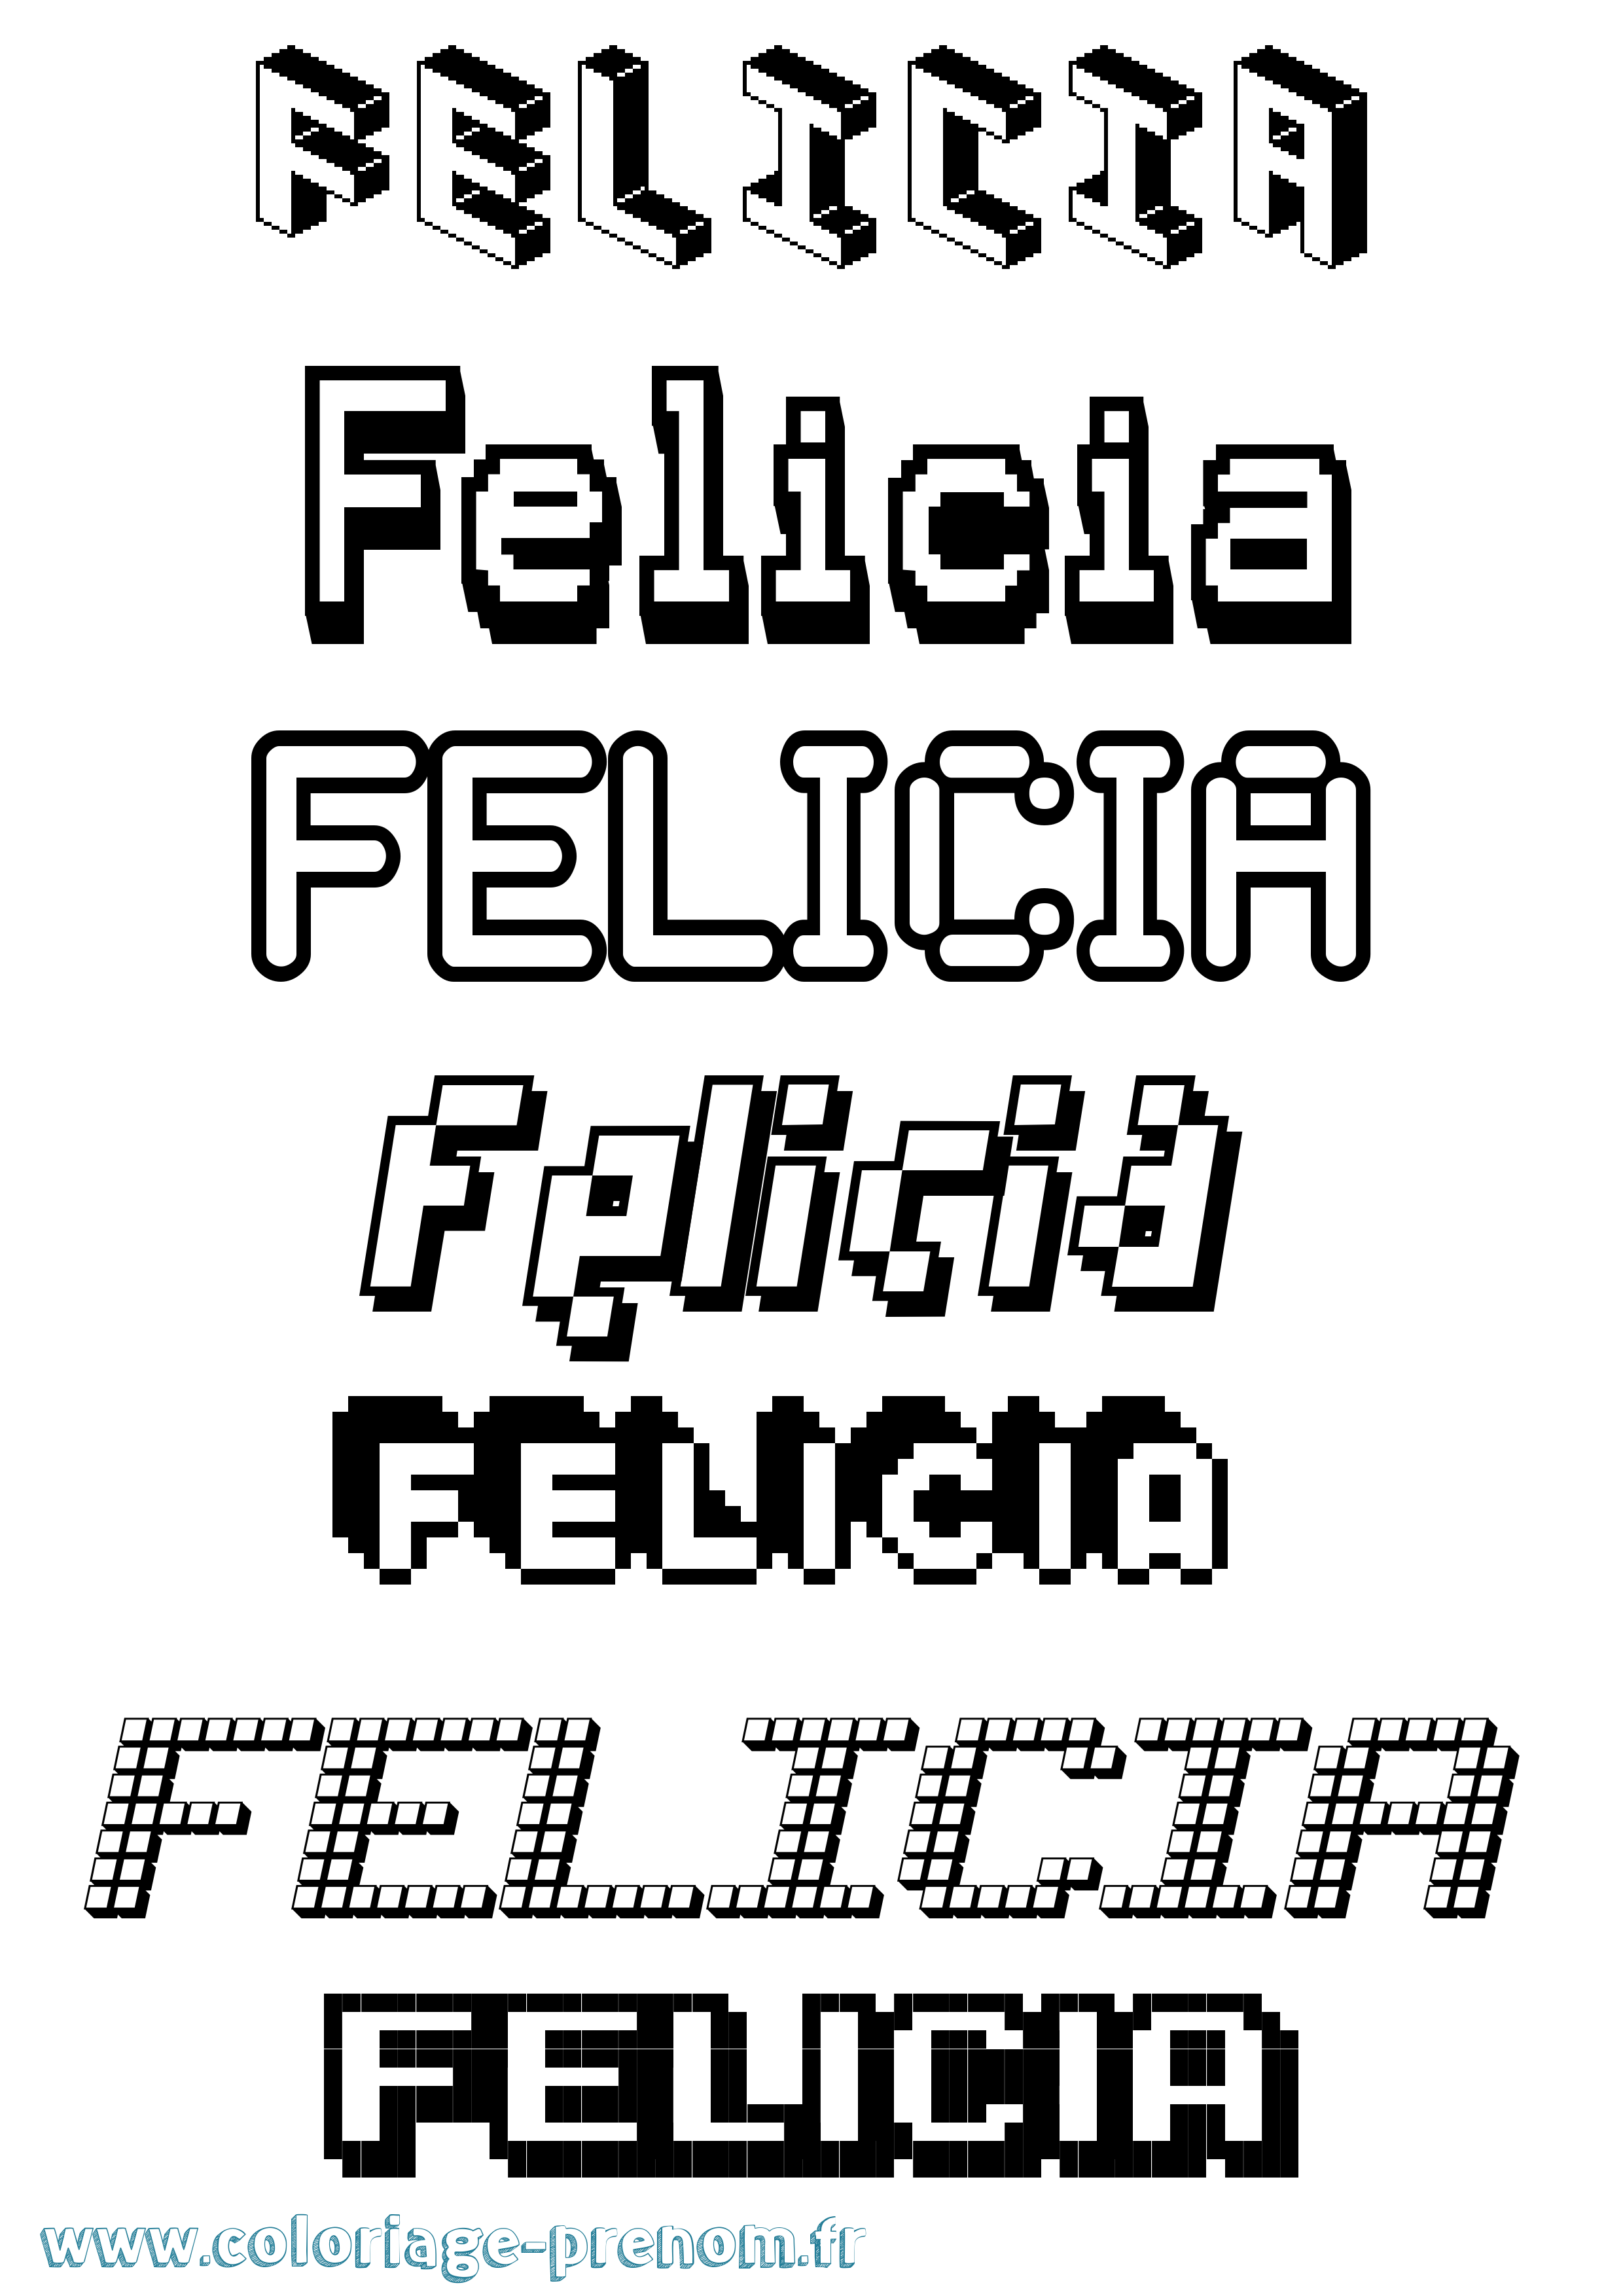 Coloriage prénom Felicia Pixel